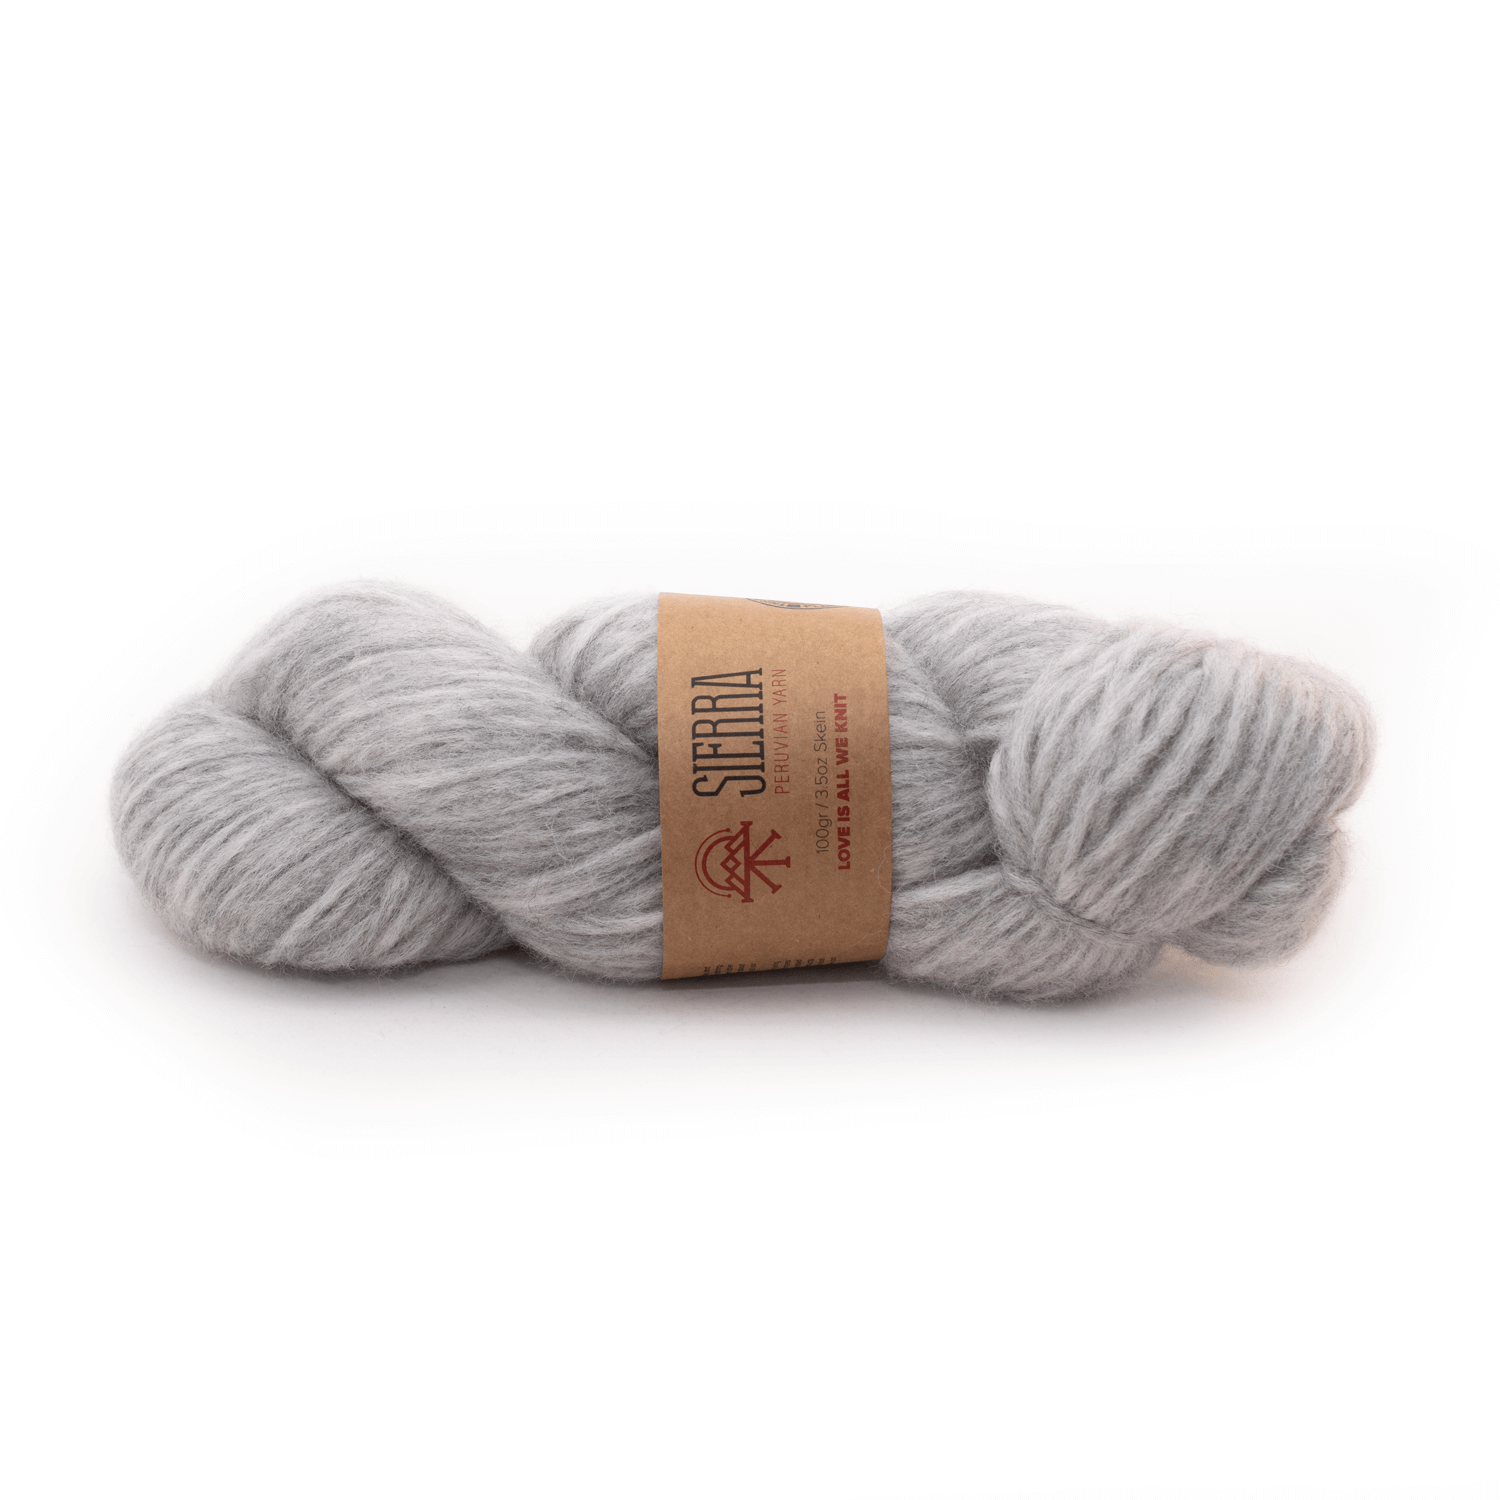 Alpaca Grey Light pullover Knitting Kit